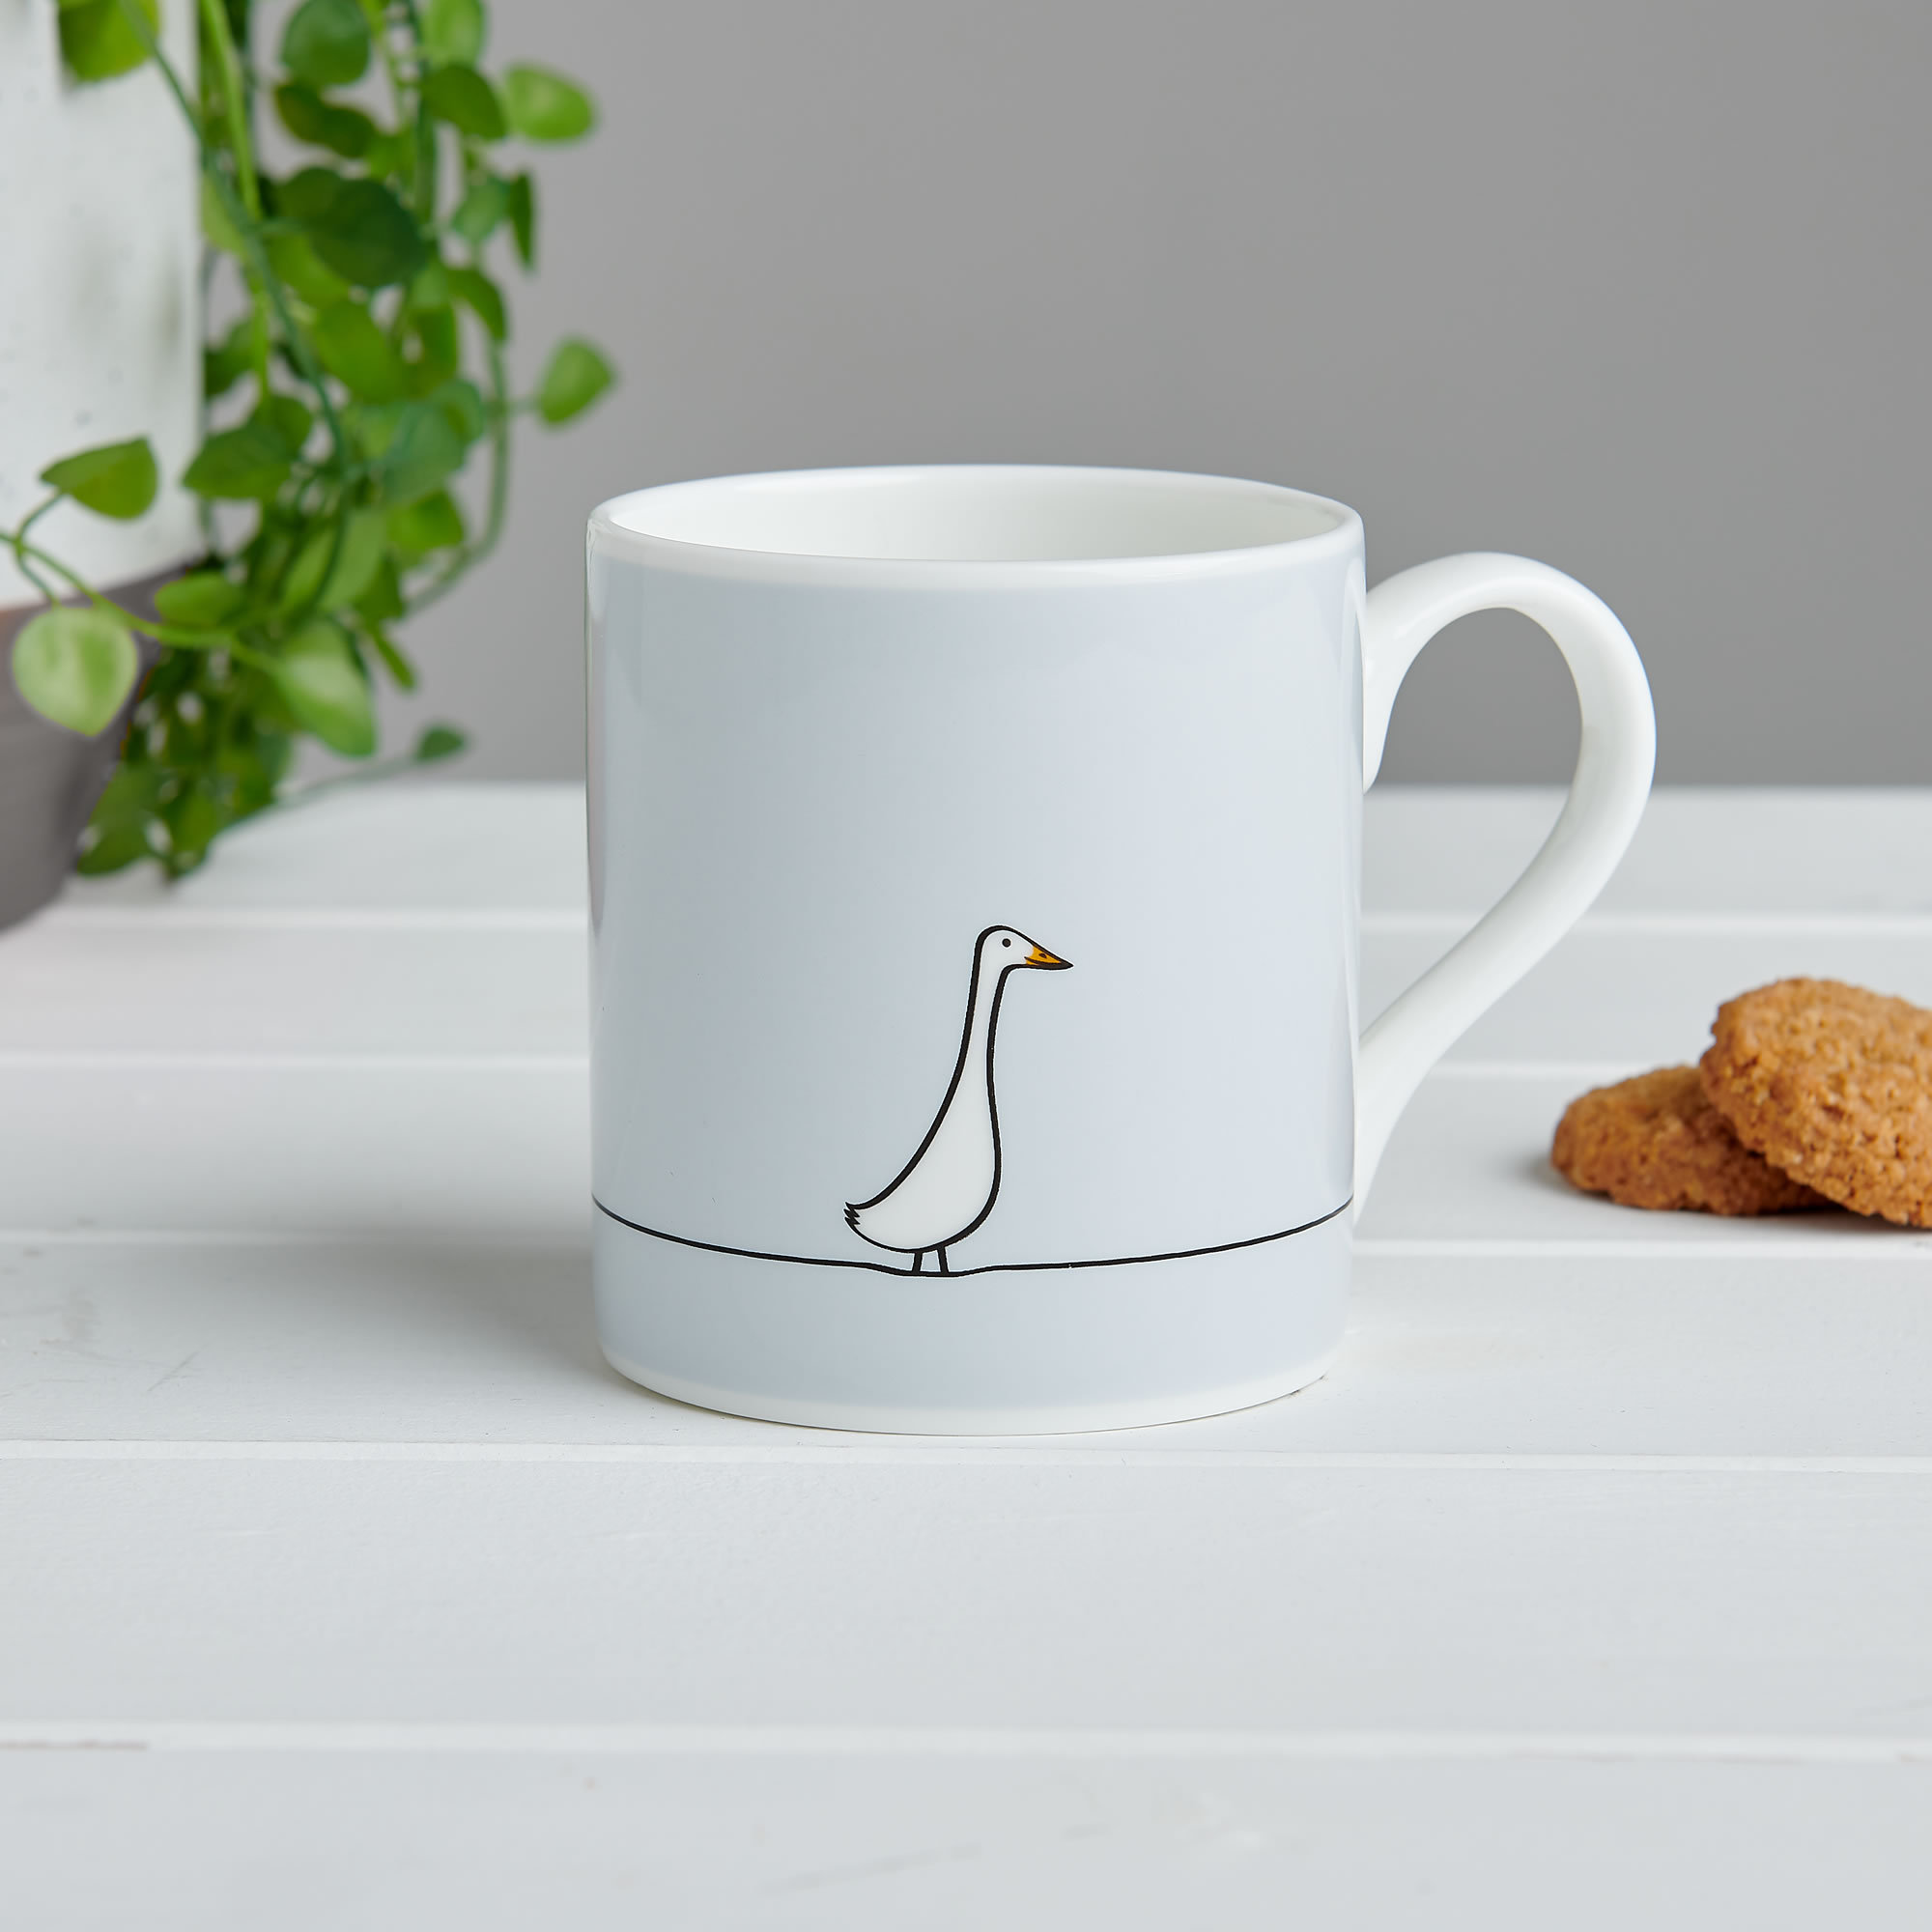 Taza mug pato, ideal como taza de café, té y/o choco.